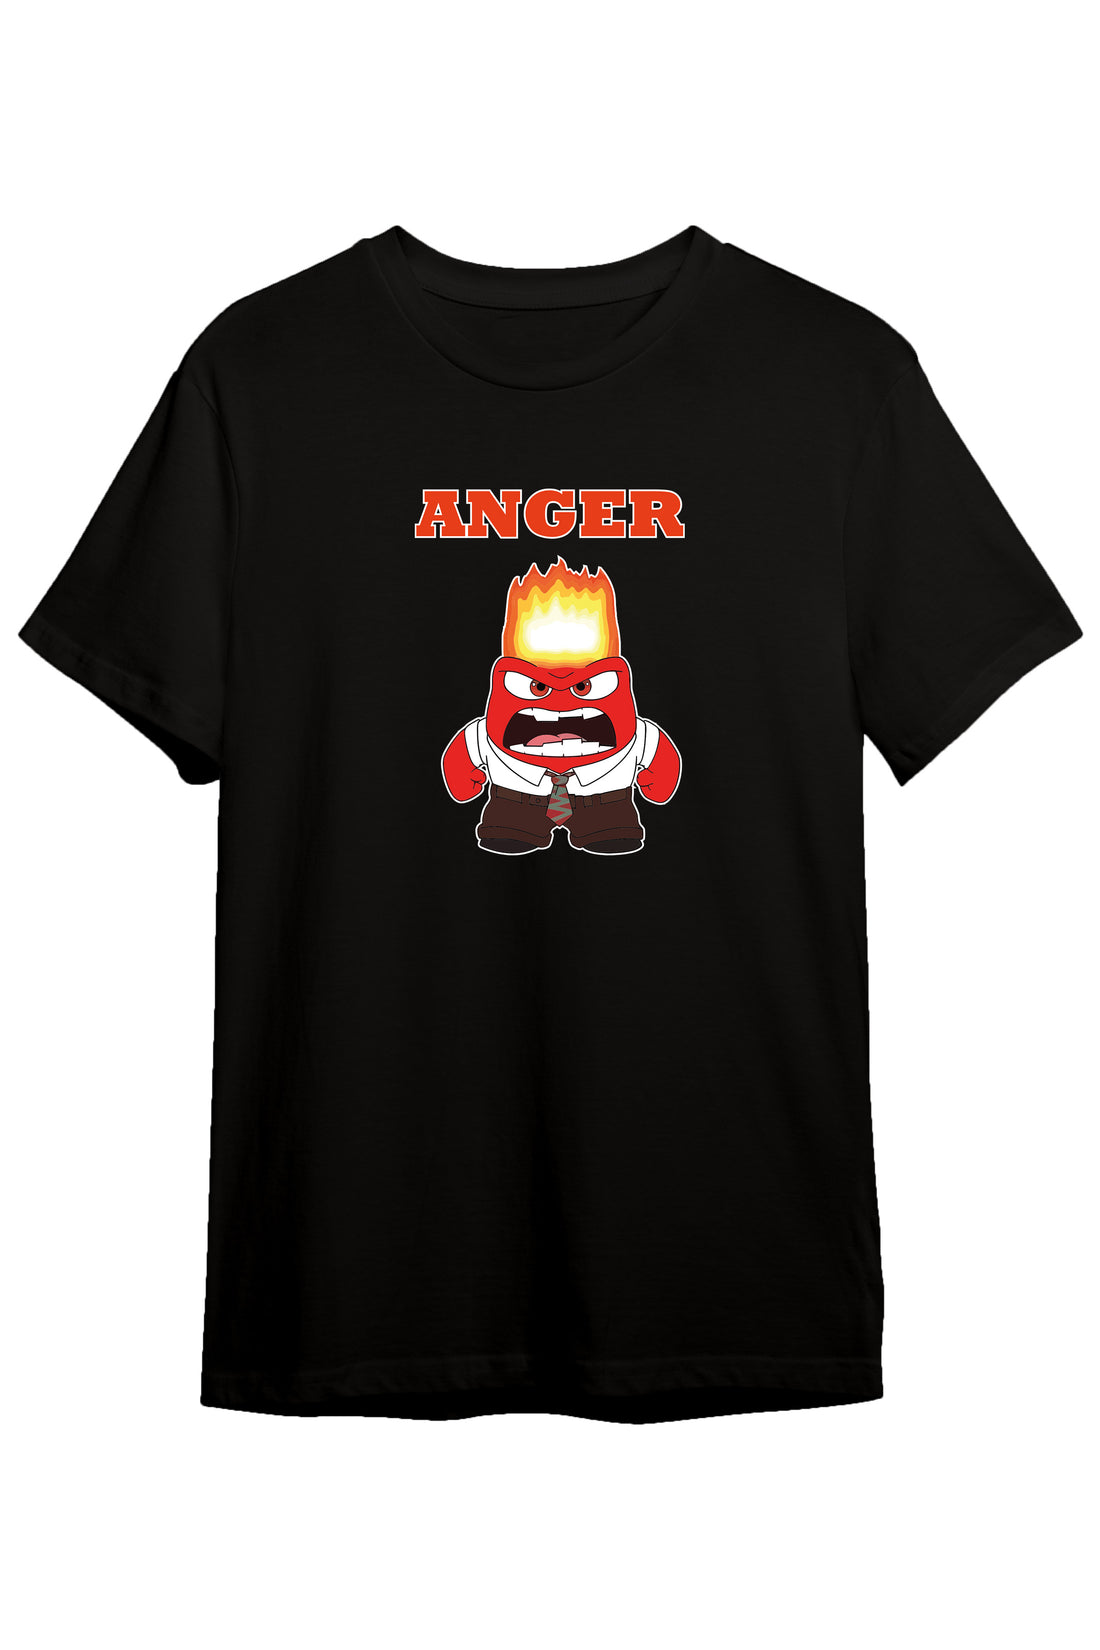 Inside Out Anger - Regular Tshirt